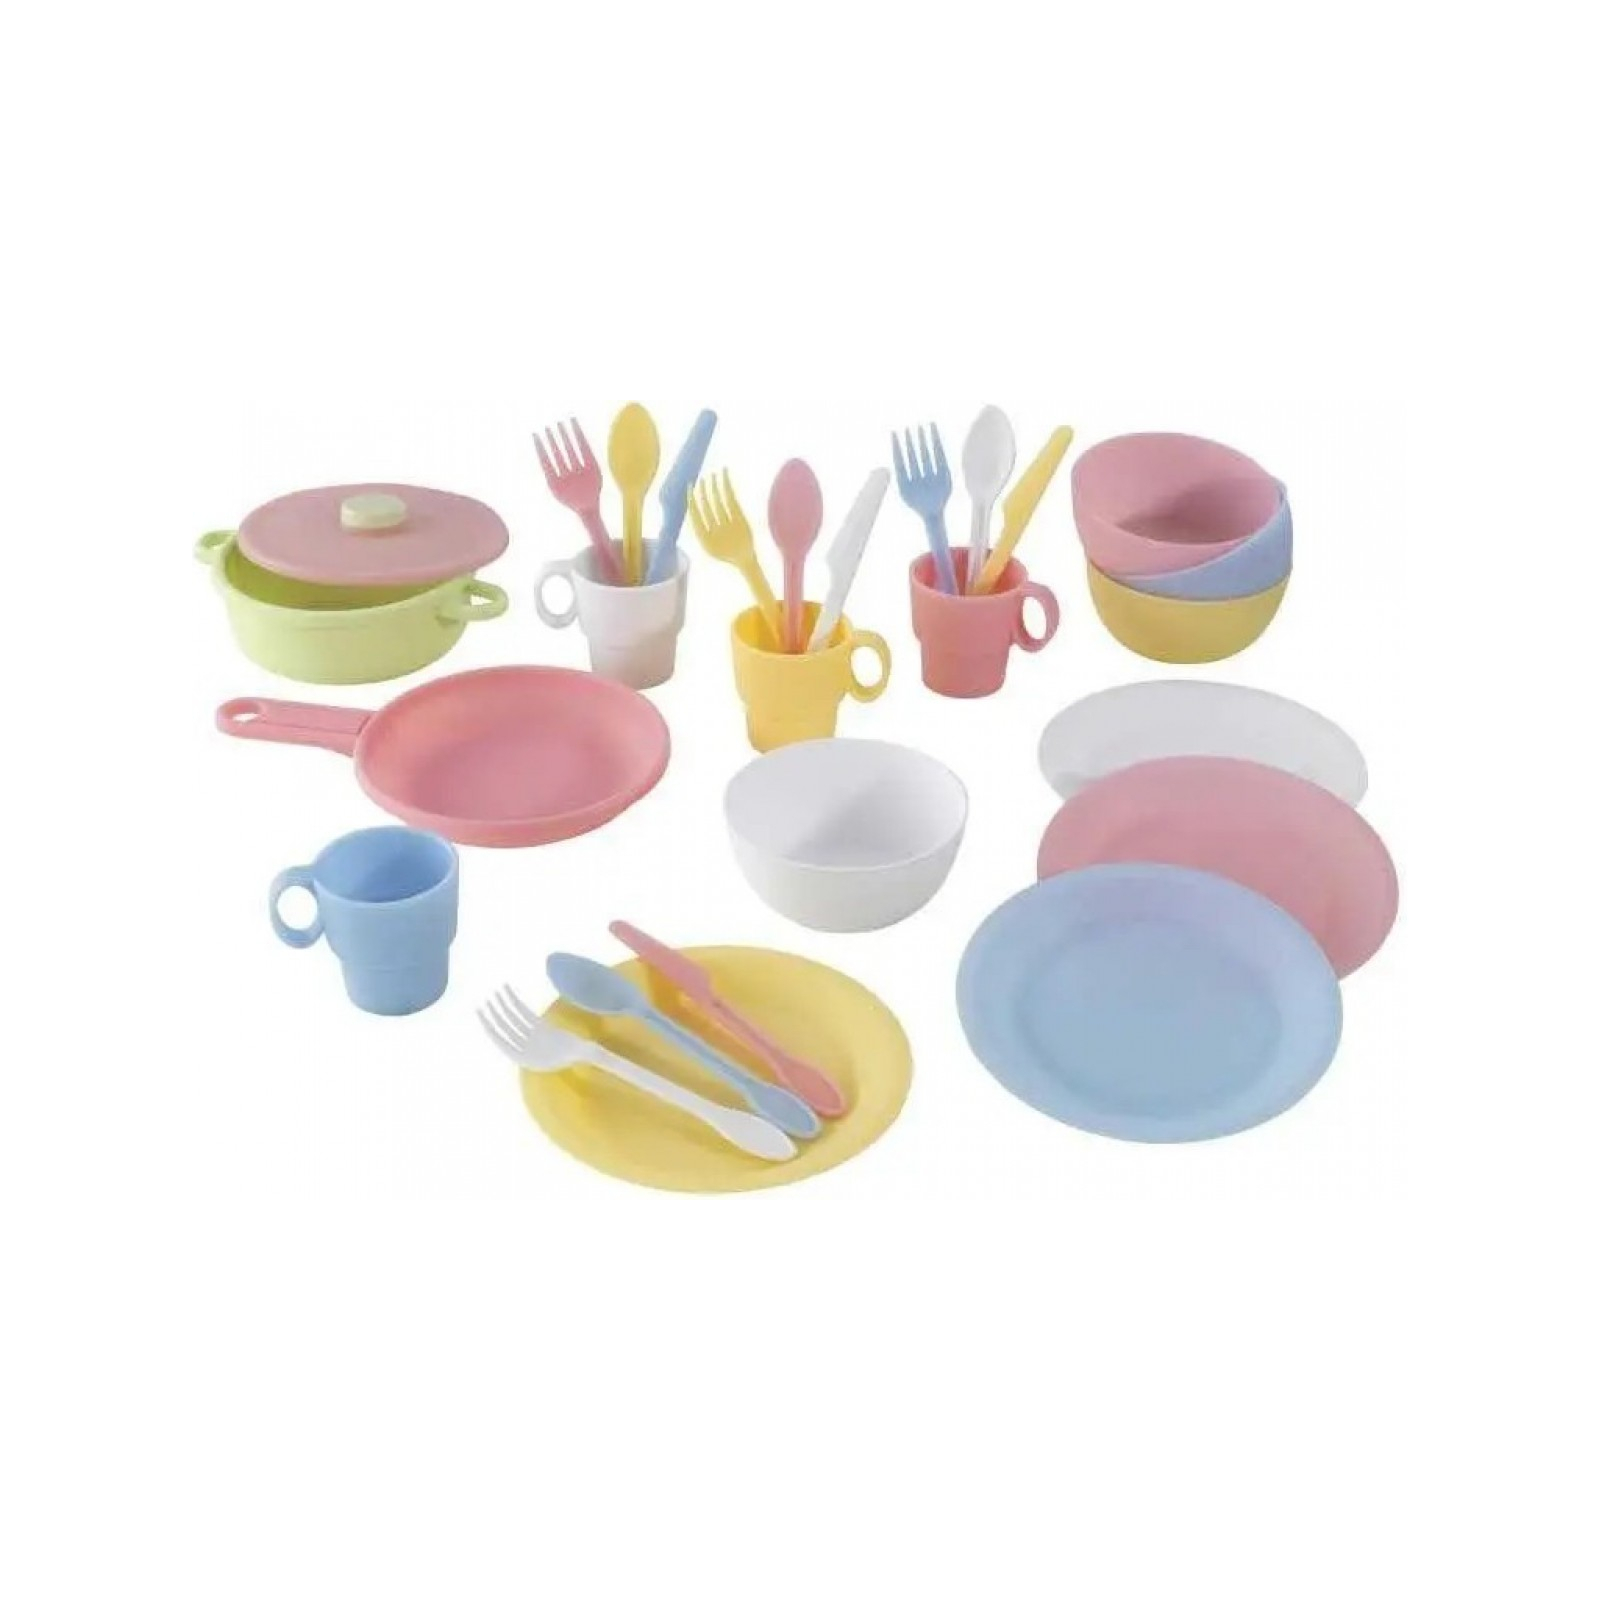 Игровой набор KidKraft набор детской посуды Пастель 27 предметов (63027)